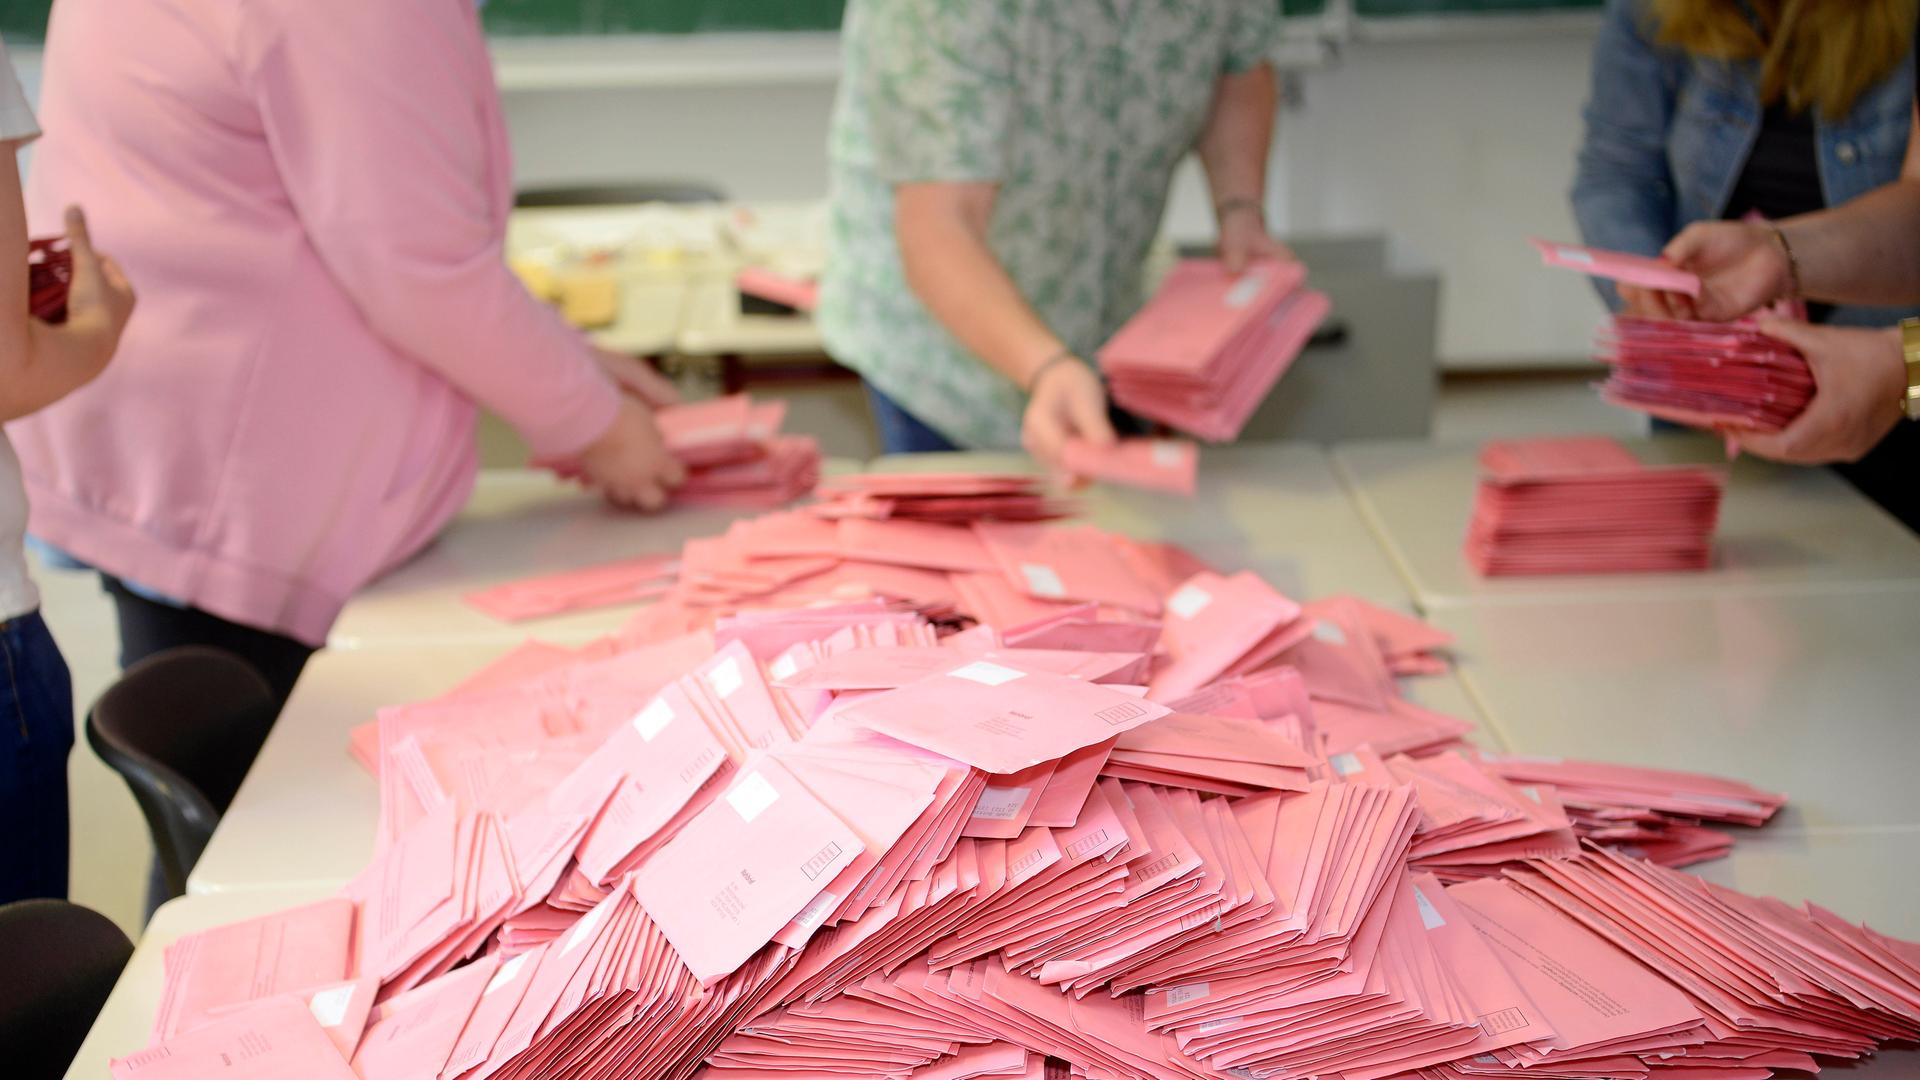 Viele rosa Wahlumschläge liegen auf einem Tisch. Menschen stehen an dem Tisch und sortieren die Umschläge.